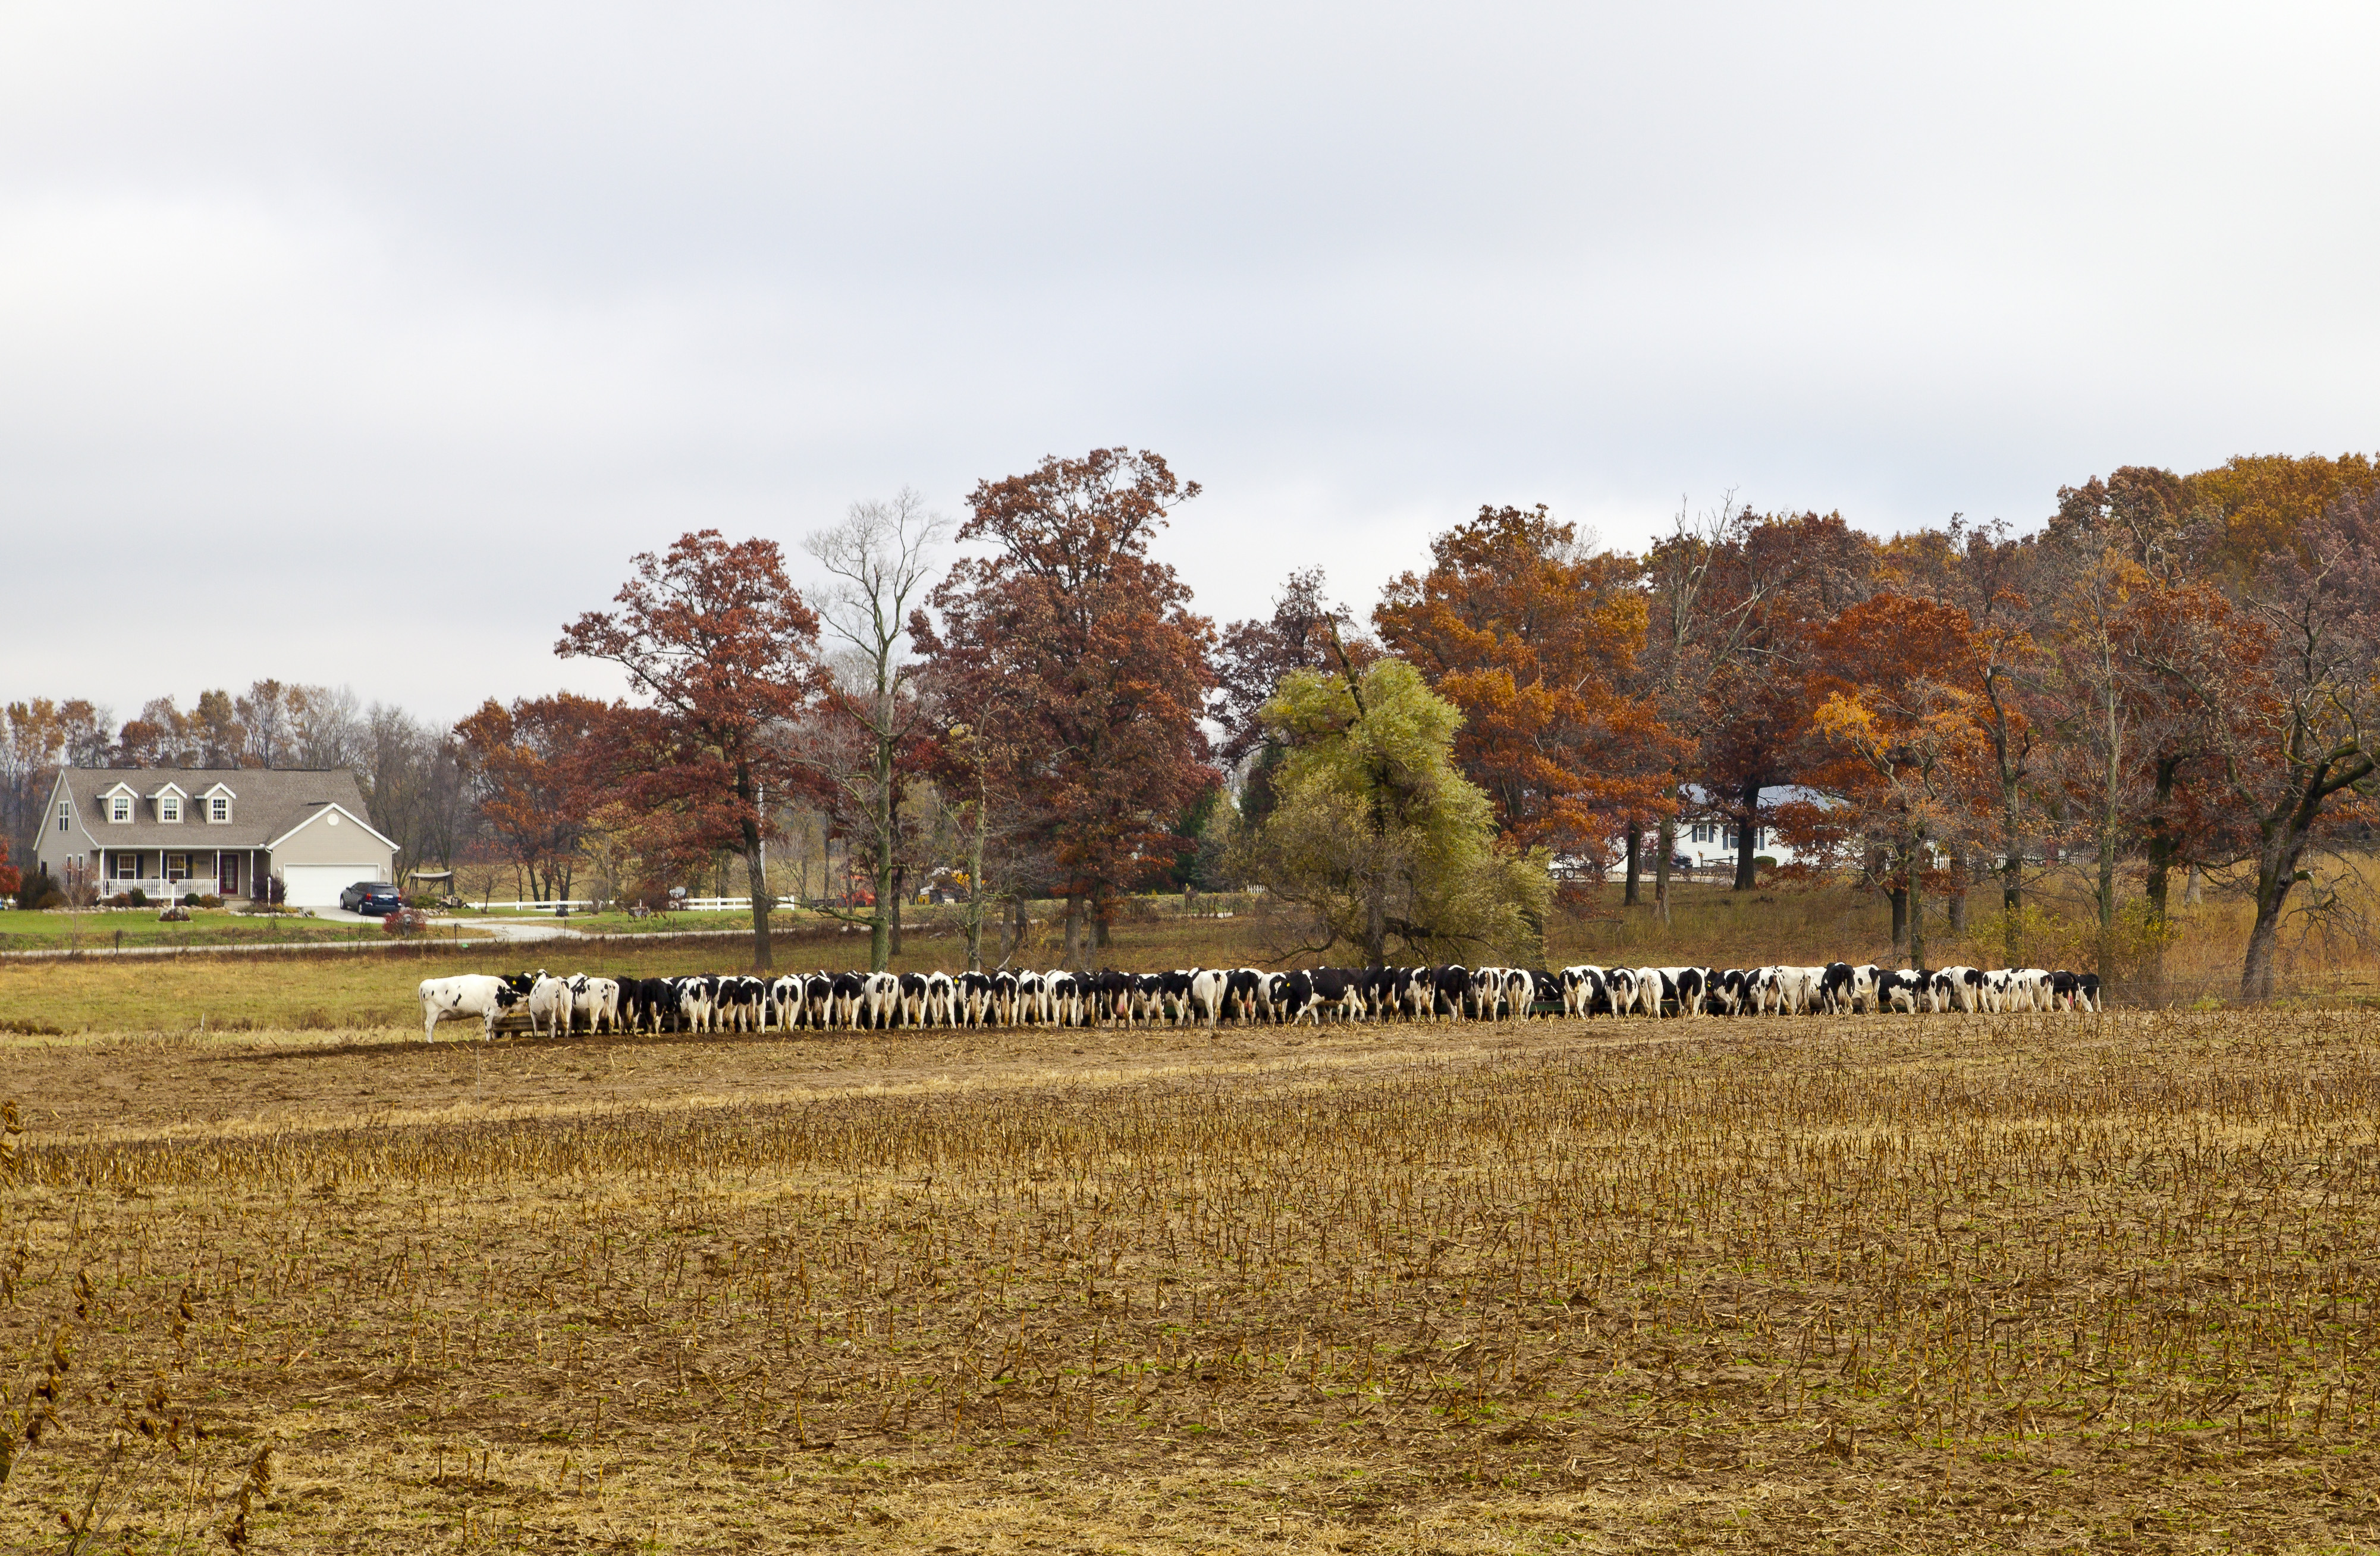 File:Vacas comiendo pienso, Kokomo, Indiana, Estados Unidos, 2012-10-20, DD 05.jpg